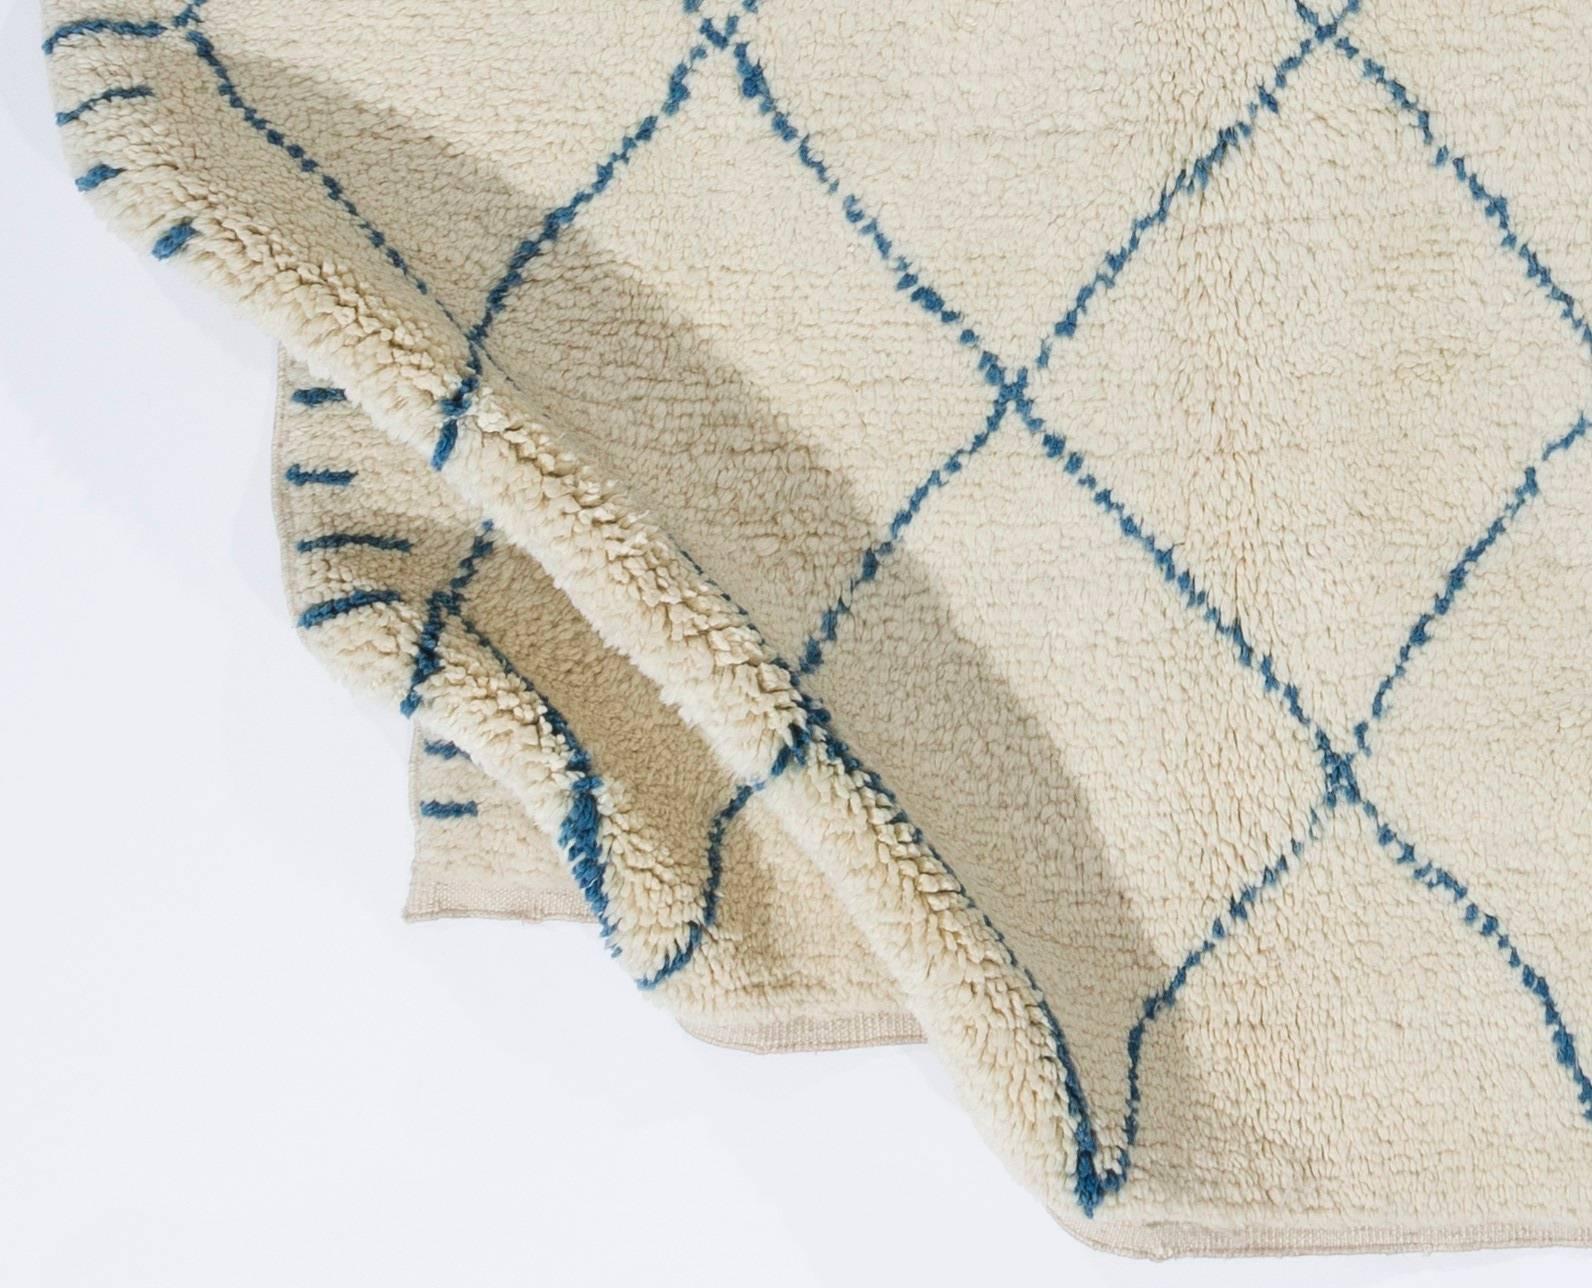 Tapis marocain contemporain noué à la main, en laine de mouton teintée dans la masse. 
Poil doux et confortable, idéal pour les familles avec enfants.
Disponible tel quel ou sur mesure dans toute combinaison de taille et de couleur demandée.